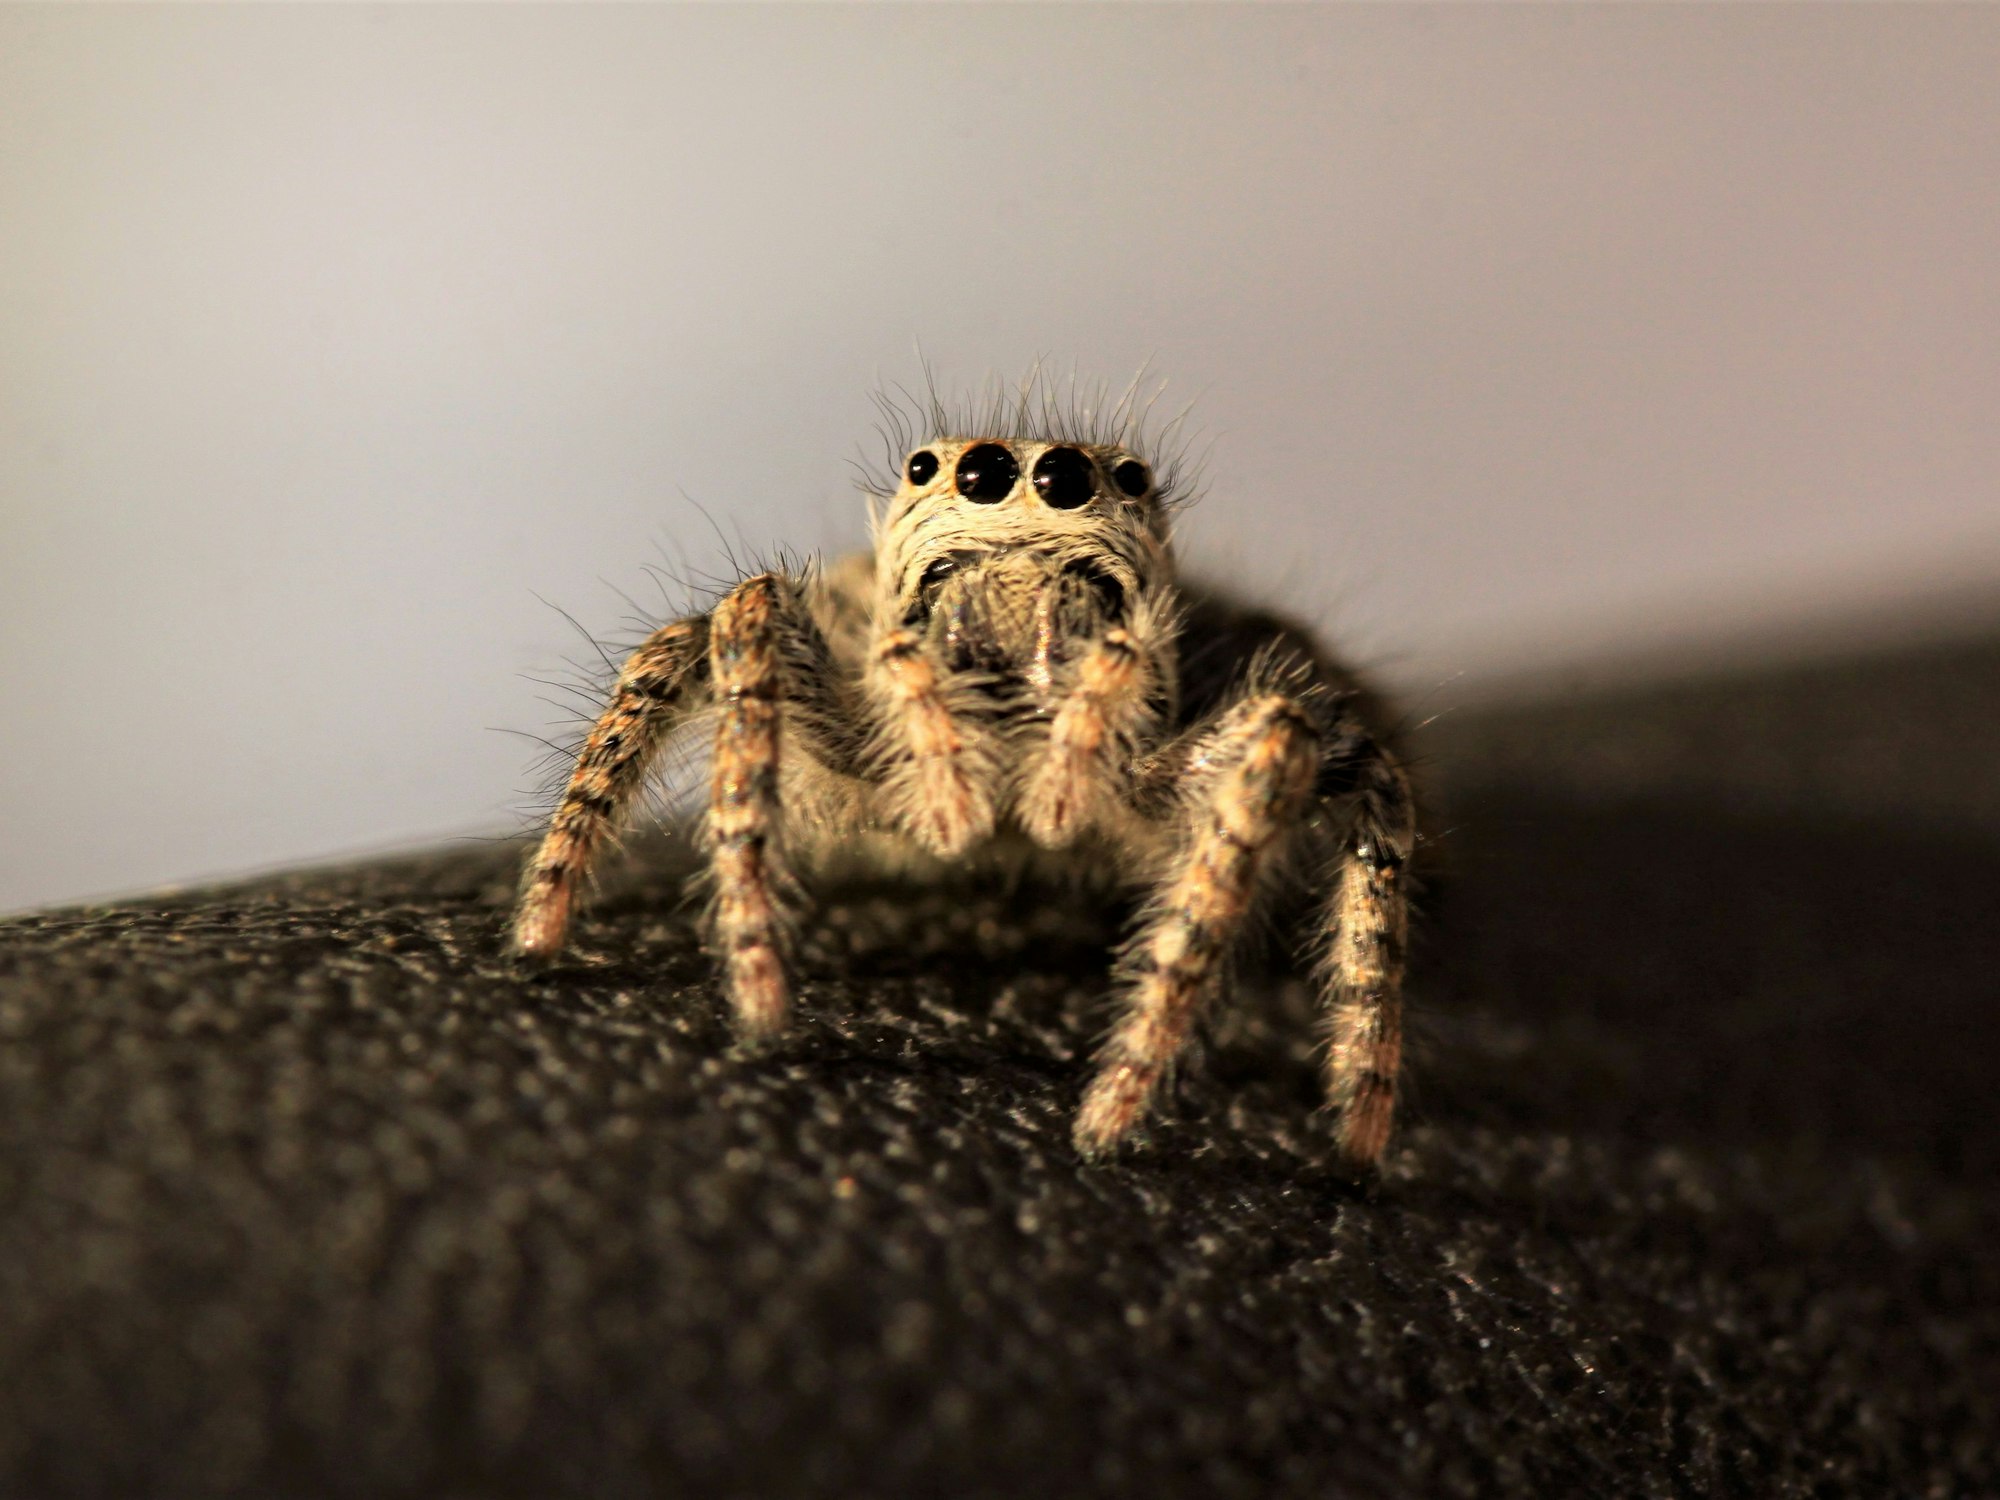 Nahaufnahme einer haarigen Spinne mit vier Augen.